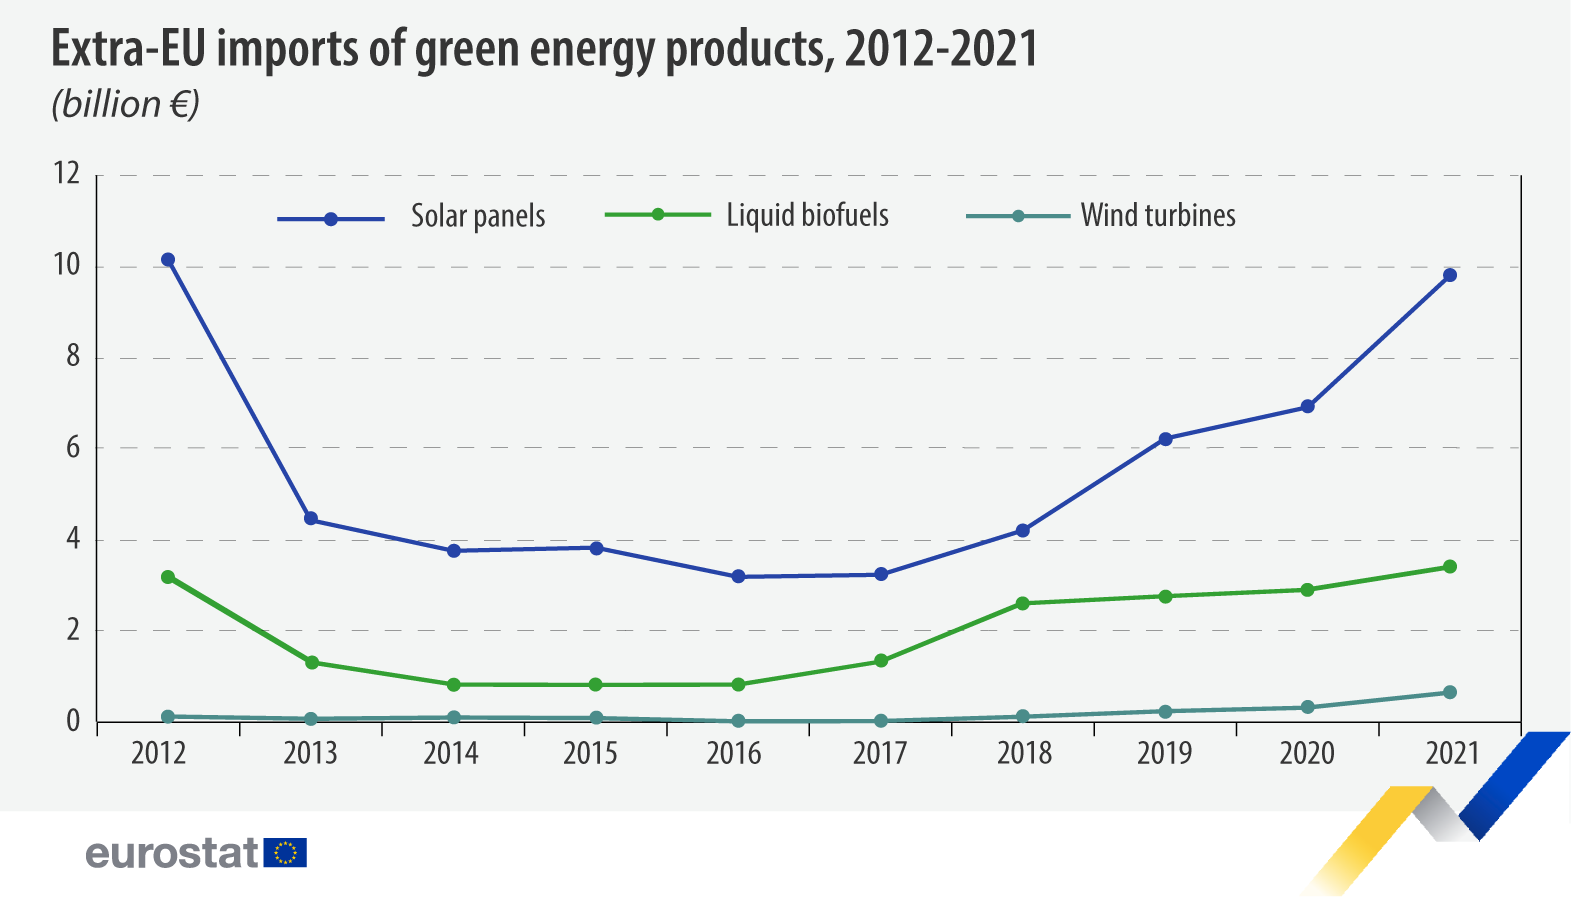 Grafico a linee: Importazioni extra-UE di prodotti energetici verdi, miliardi di €, 2012-2021